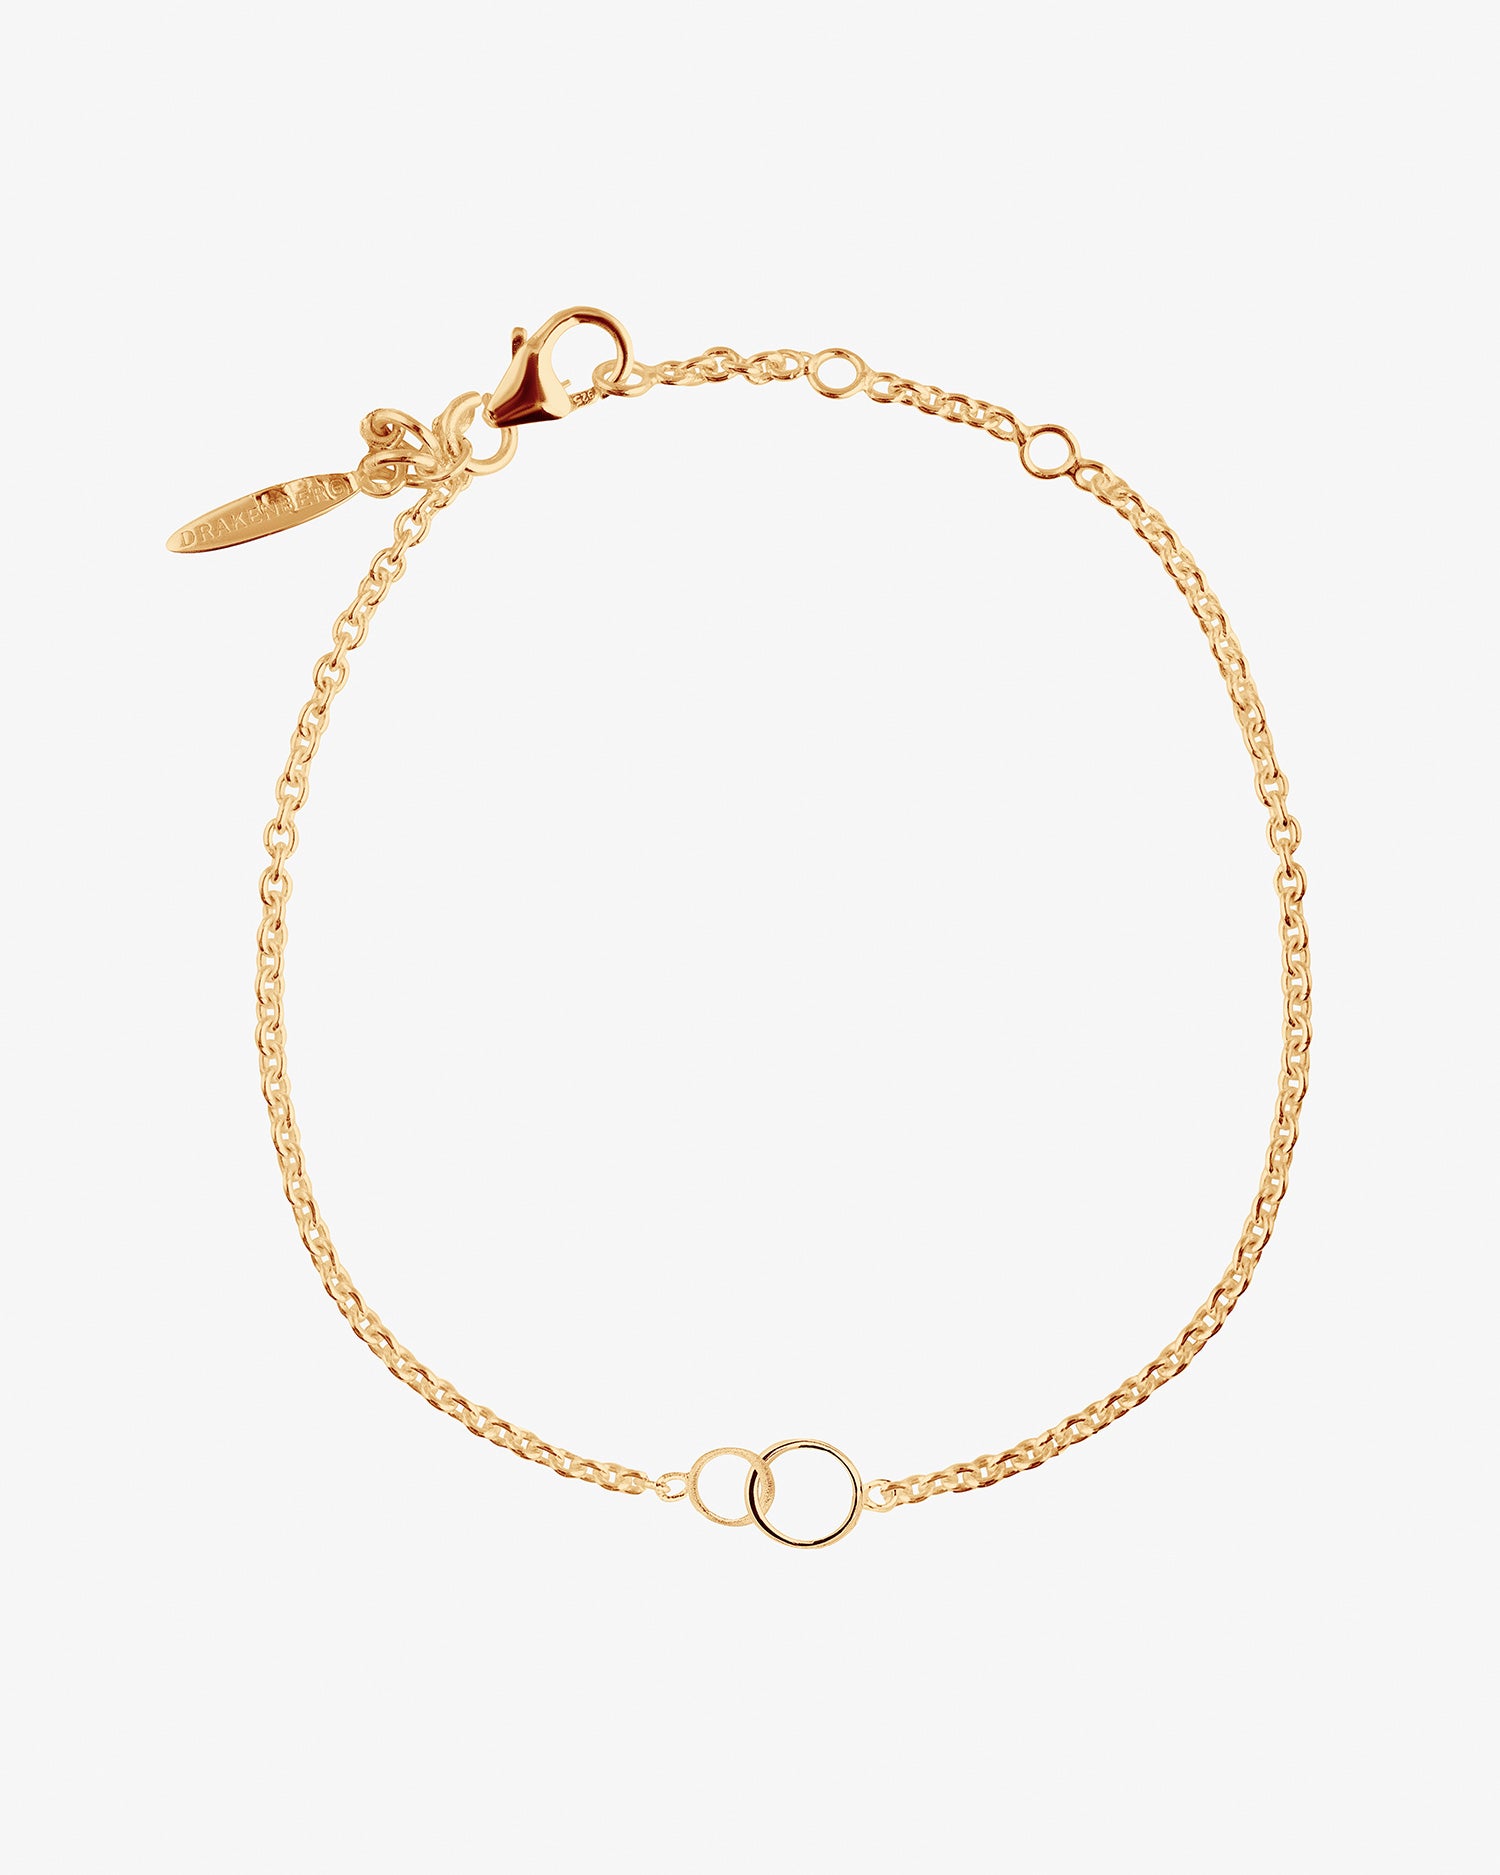 Les-Amis-drop-bracelet-gold-2